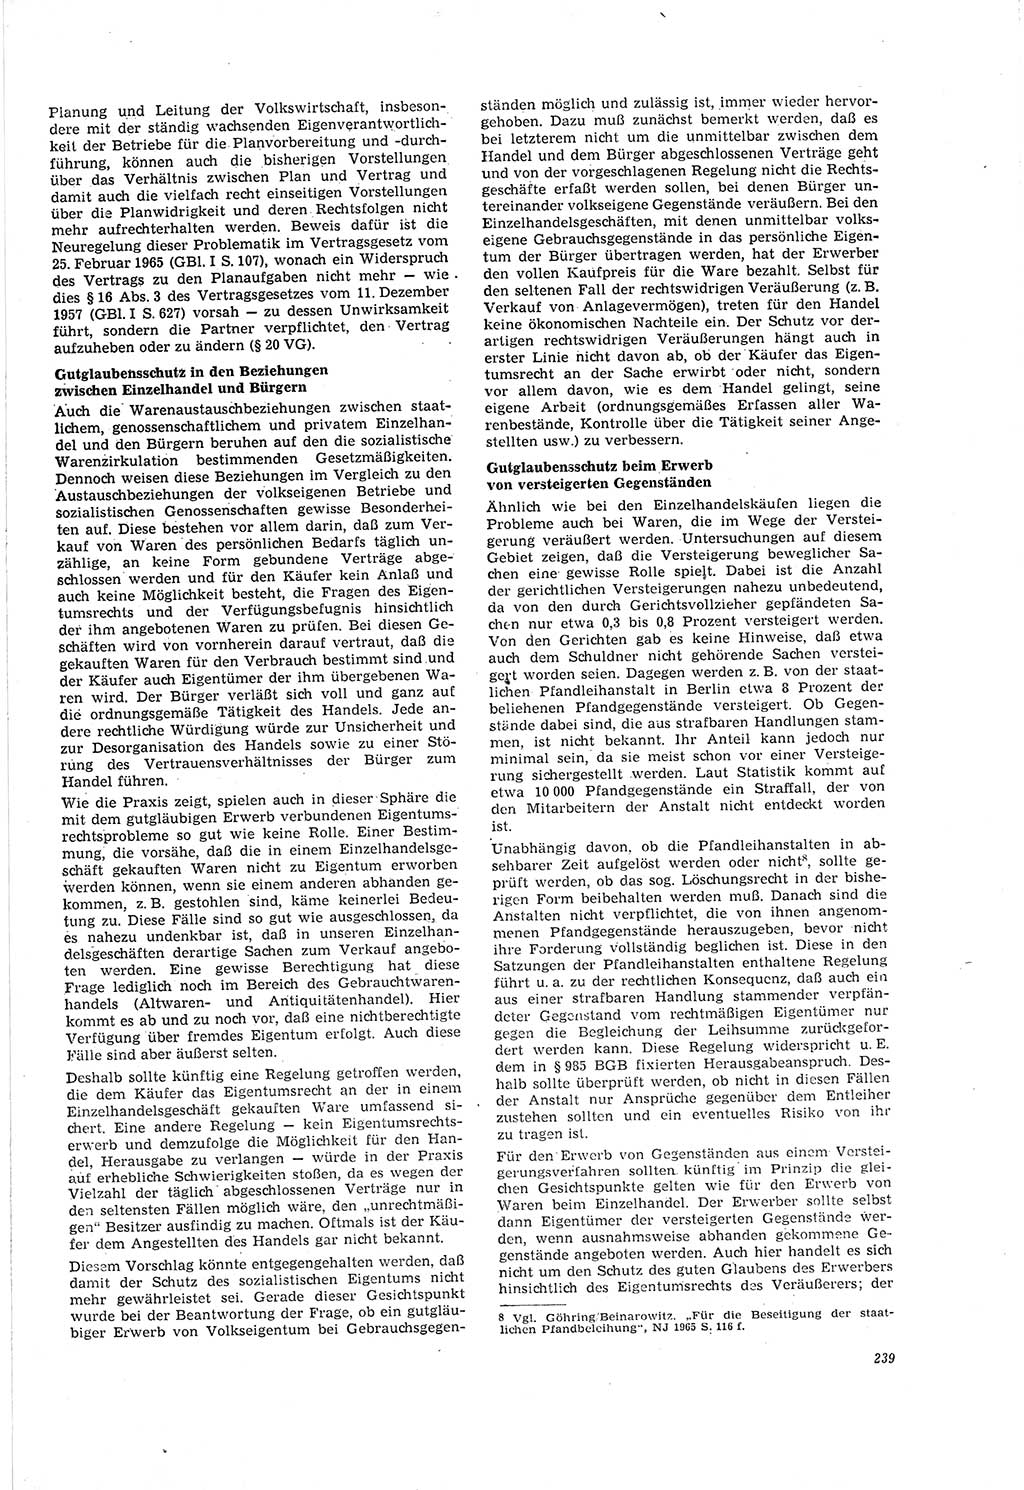 Neue Justiz (NJ), Zeitschrift für Recht und Rechtswissenschaft [Deutsche Demokratische Republik (DDR)], 20. Jahrgang 1966, Seite 239 (NJ DDR 1966, S. 239)